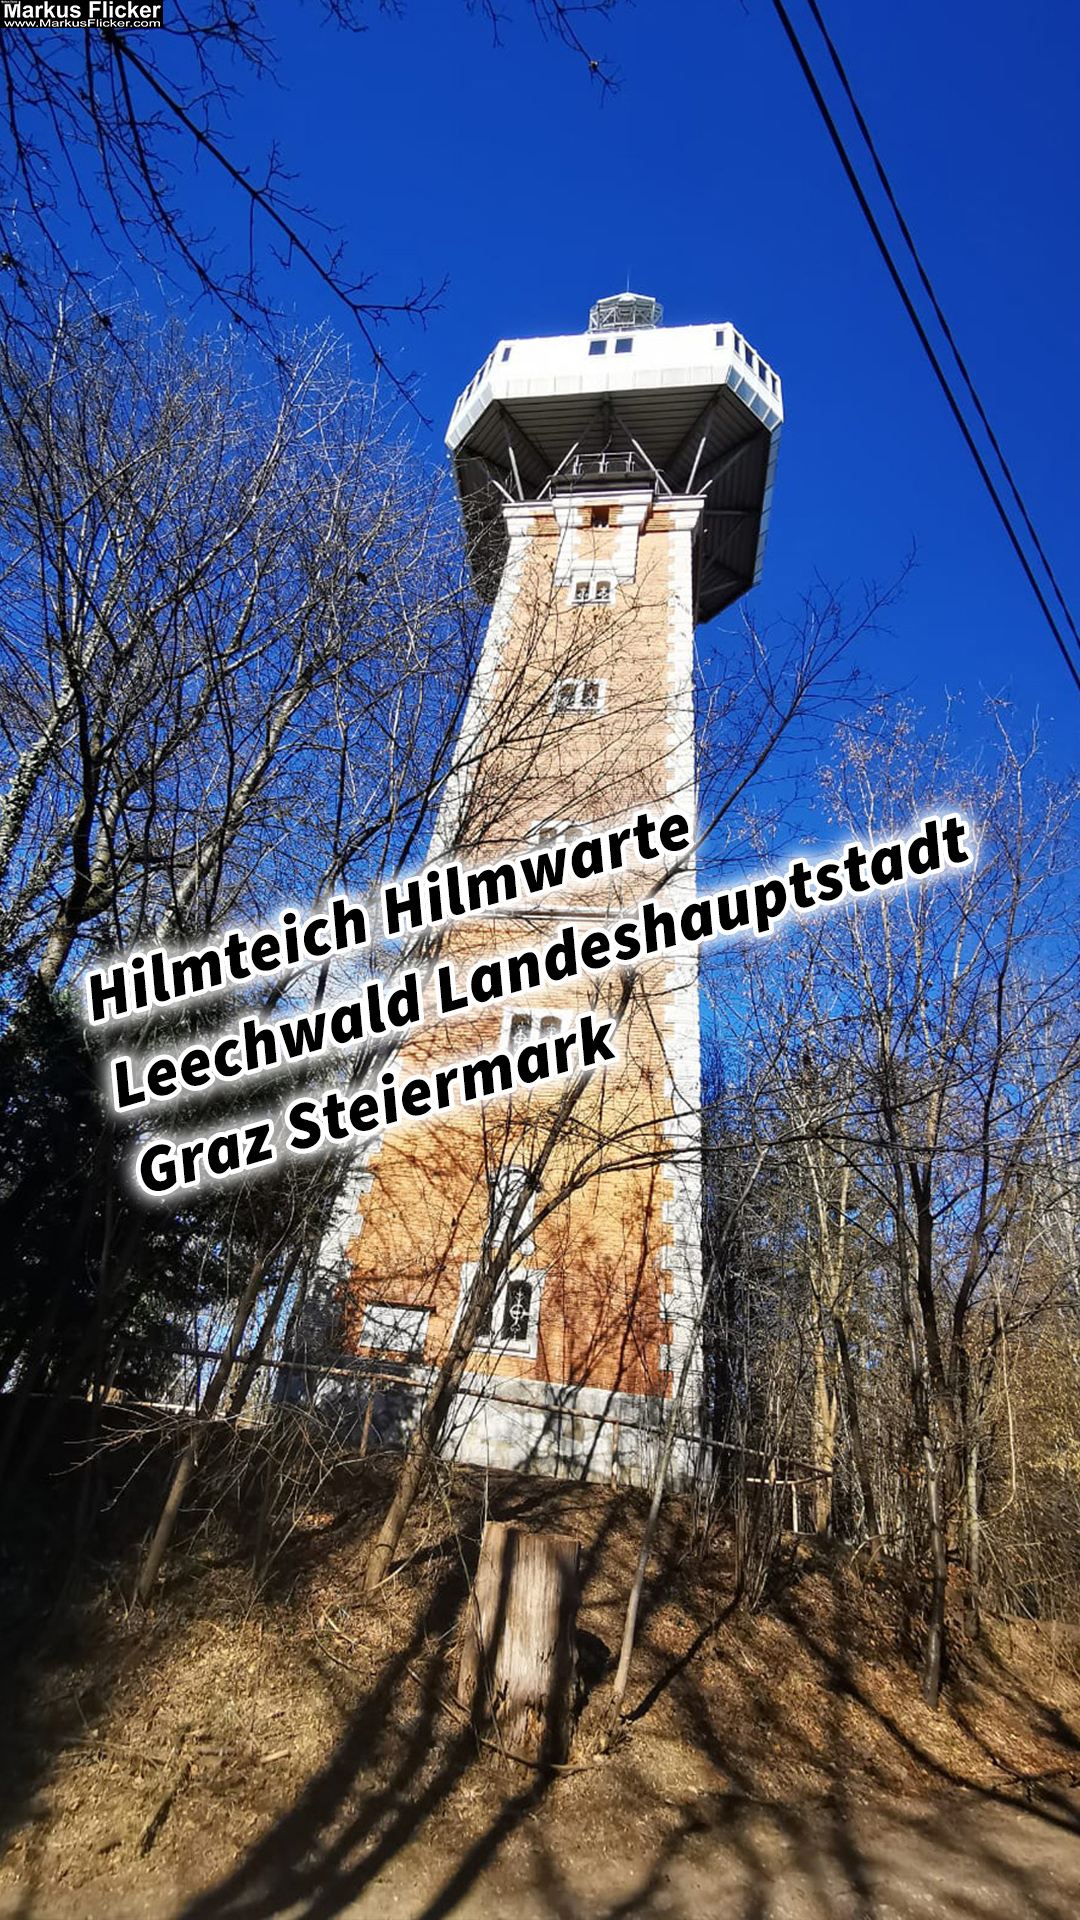 Hilmteich Hilmwarte Leechwald Landeshauptstadt Graz Steiermark Österreich